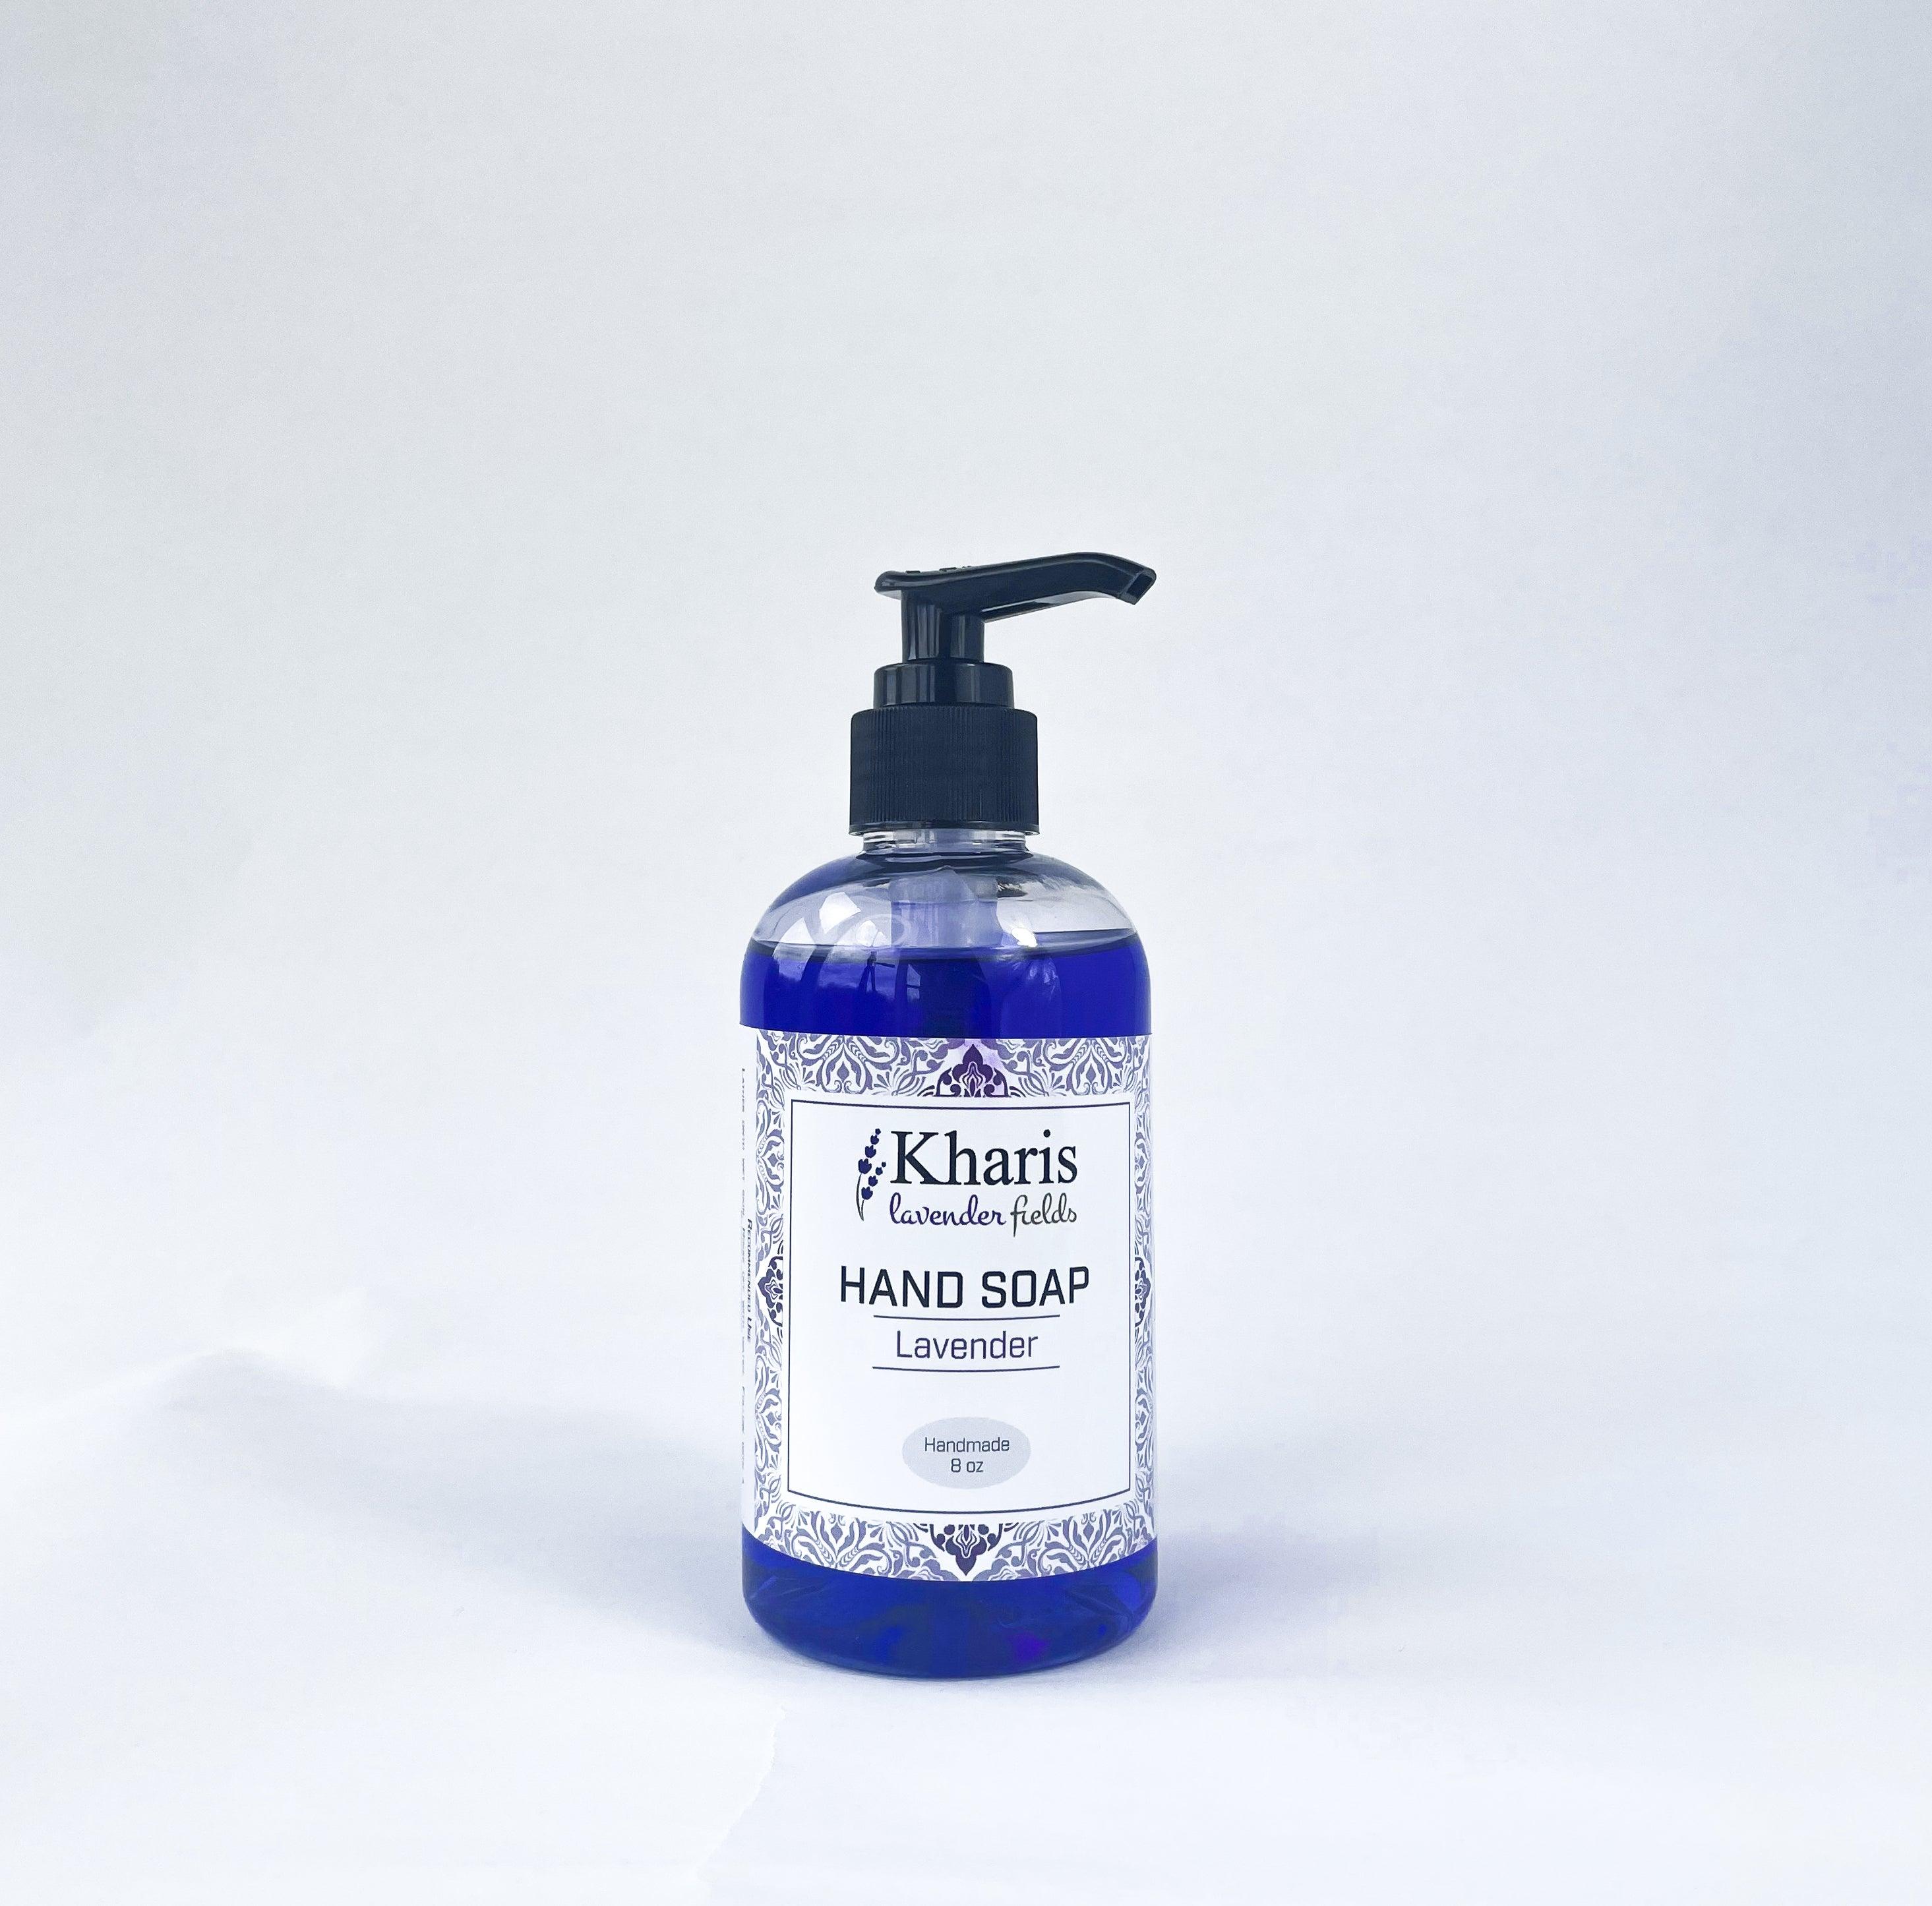 Lavender Hand Soap - Kharislavender